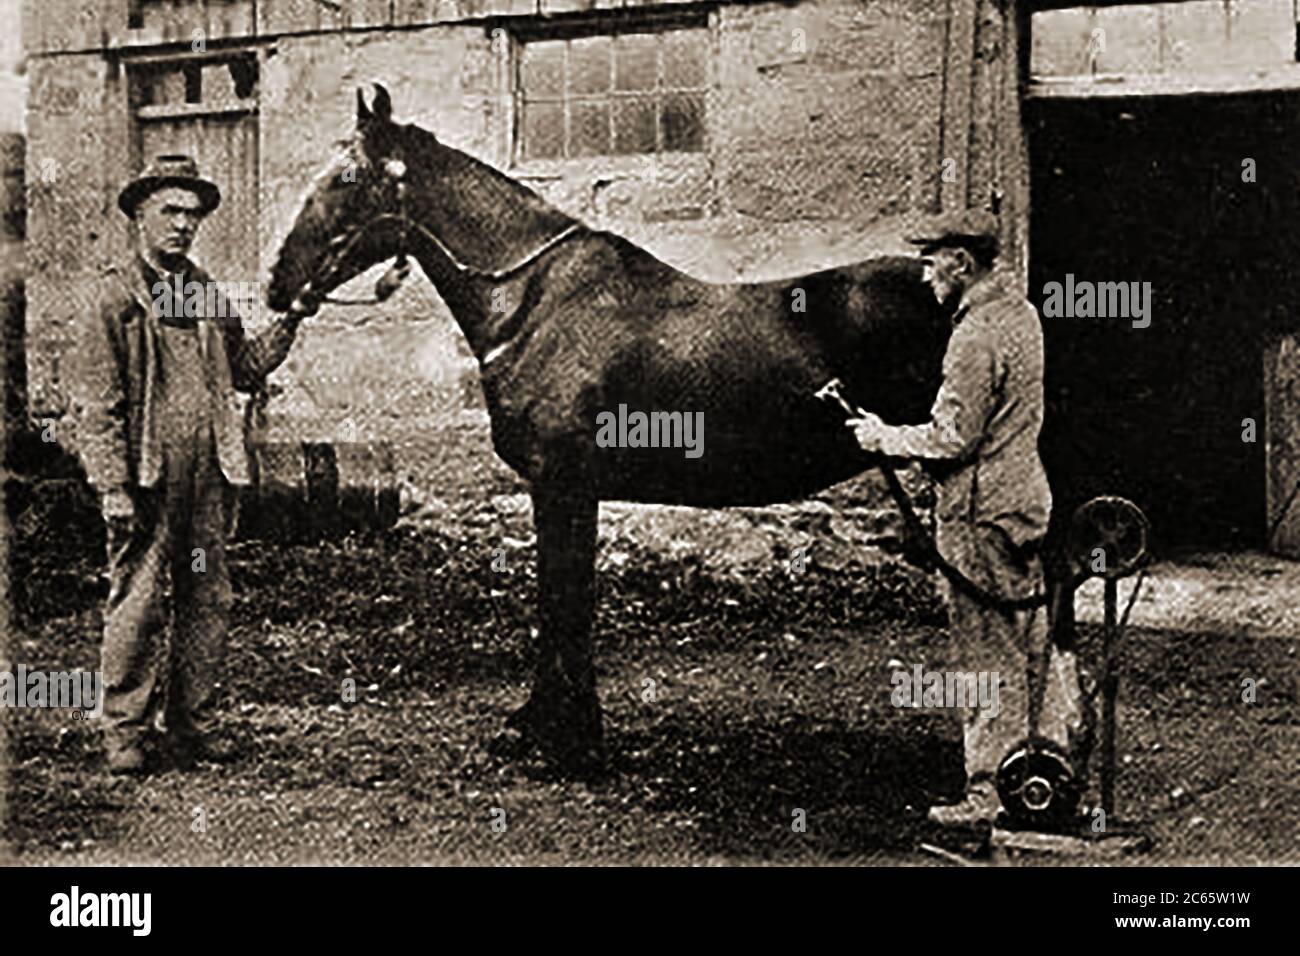 1920 EIN gedrucktes Foto von Farmer W W Ballantyne von Neidpath Farm, Stratford, Ontario, Kanada mit einem neu erfundenen Elektrorasierer/Trimmer. Ballantyne war eigentlich ein Züchter von Kurzhornkühen. Stockfoto